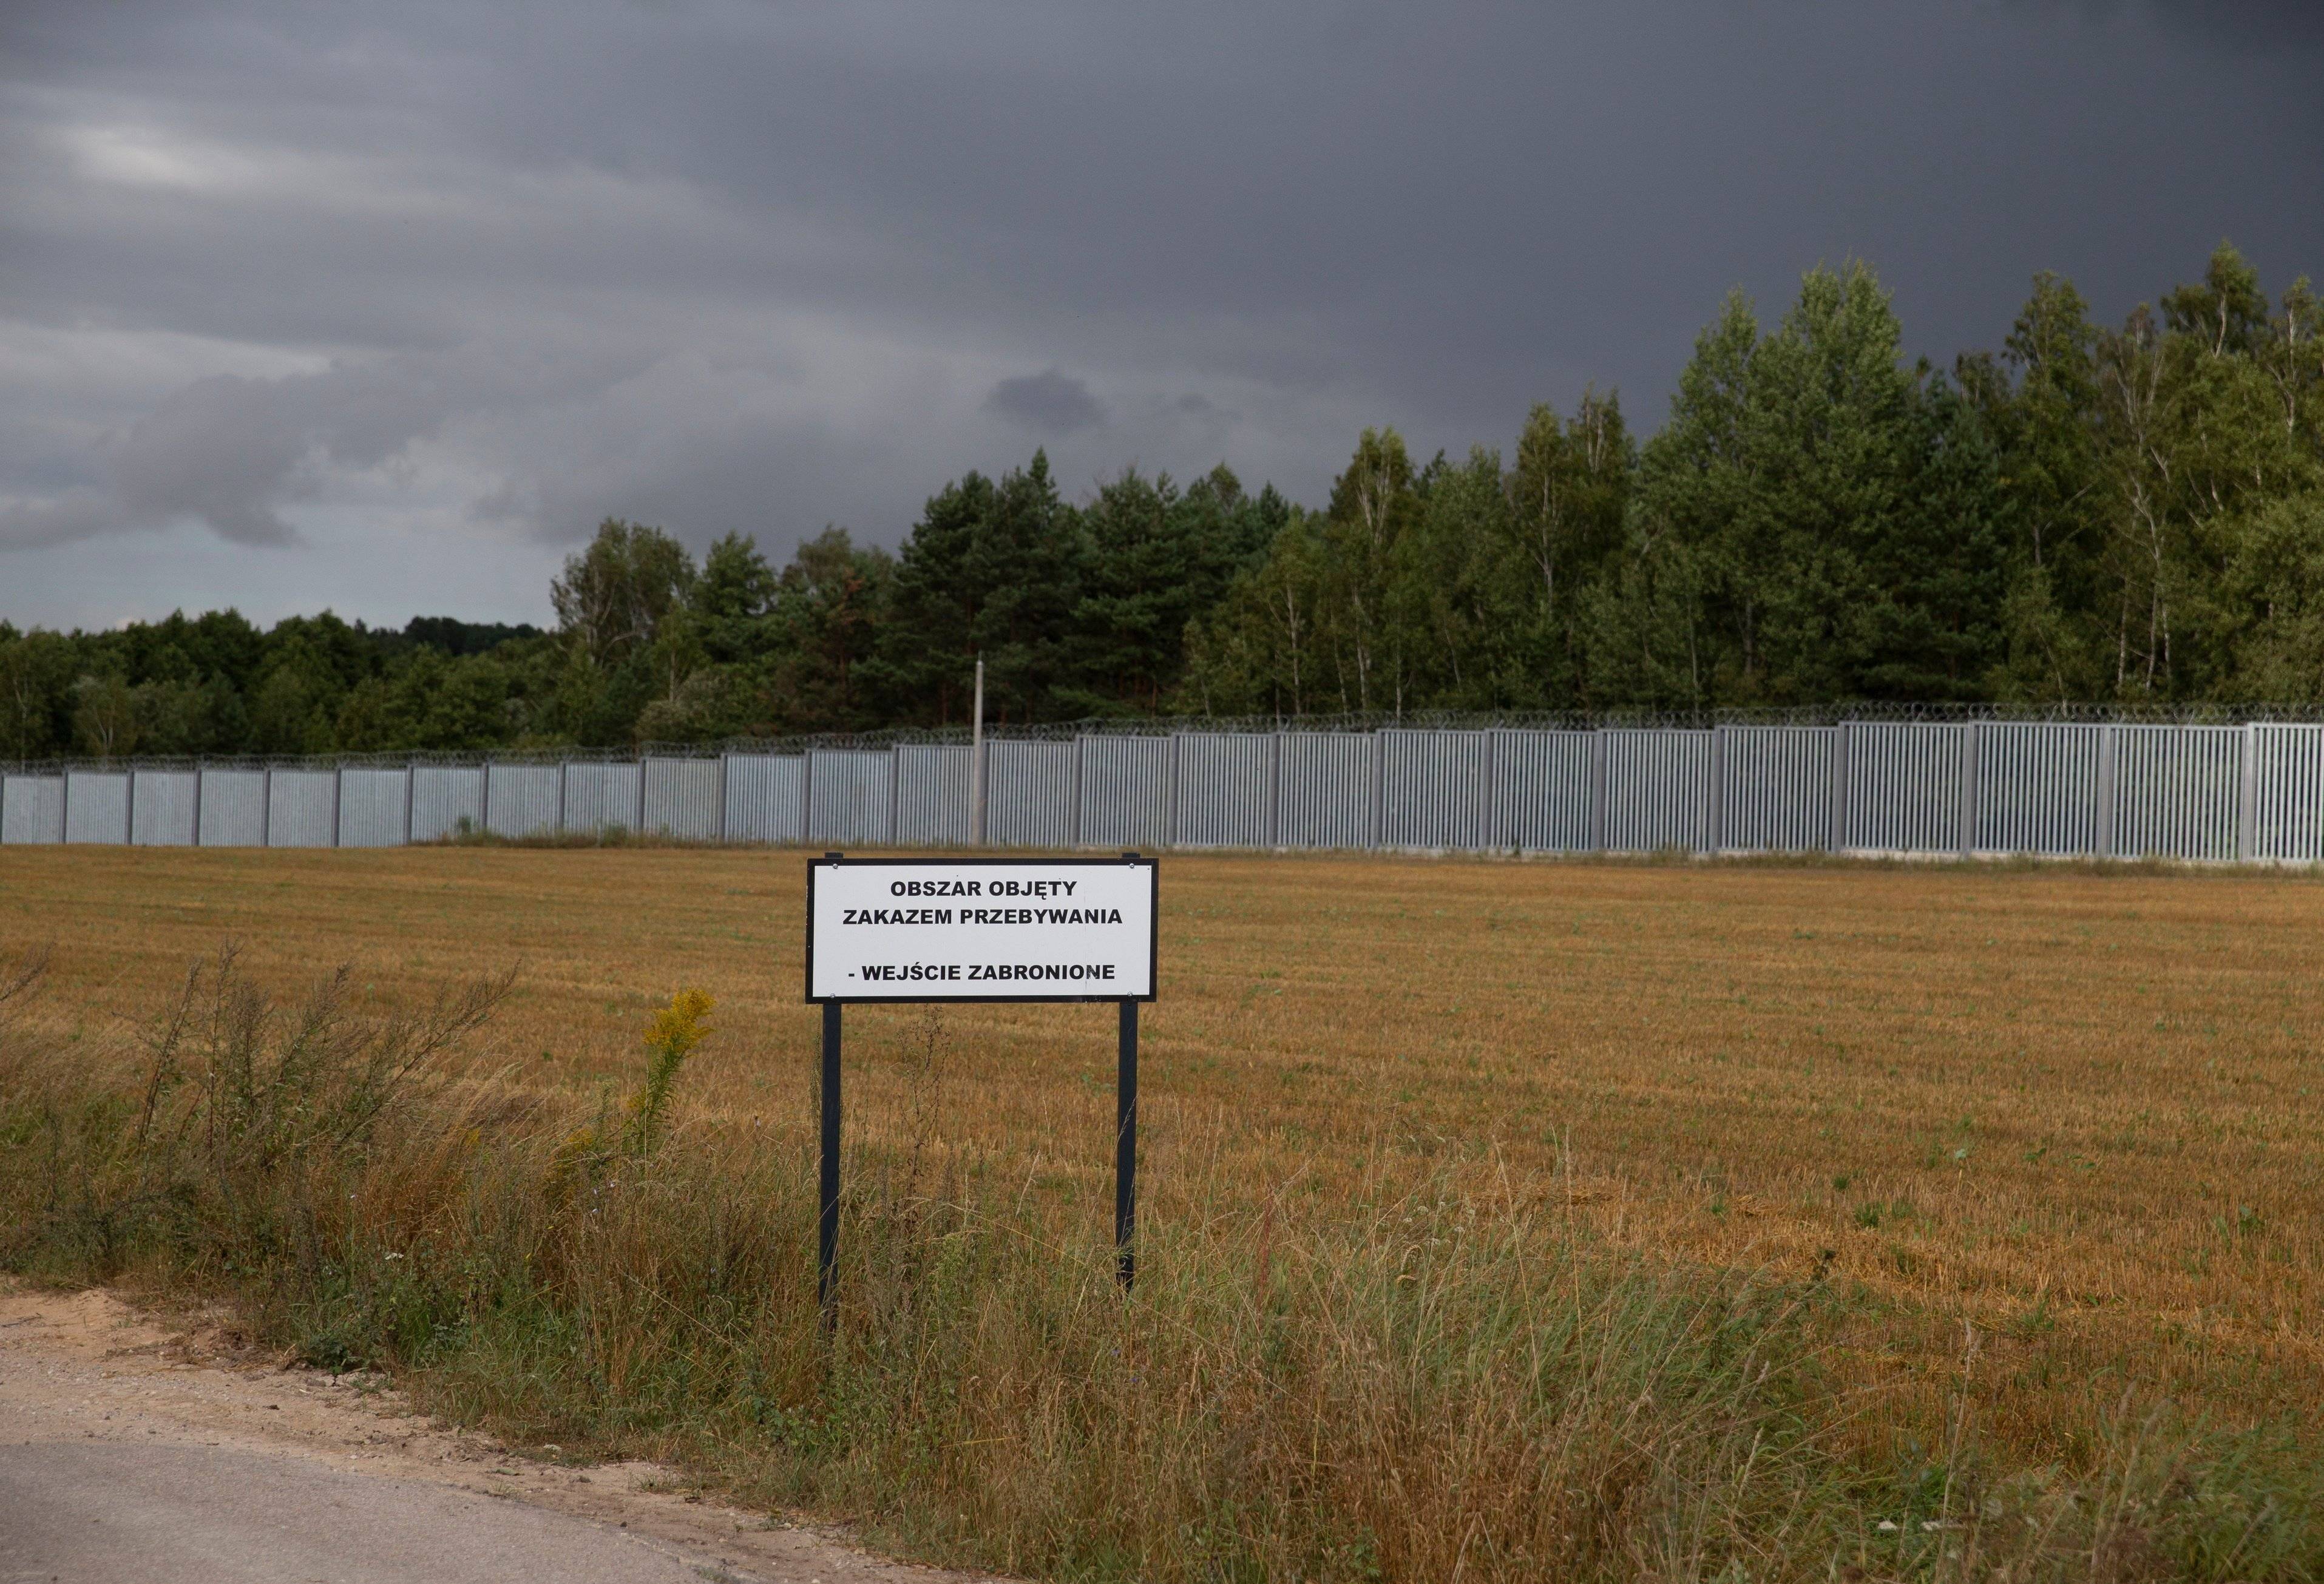 Granica polsko-białoruska: wielki płot, a z przodu tablica z napisem "Obszar objęty zakazem przebywania"